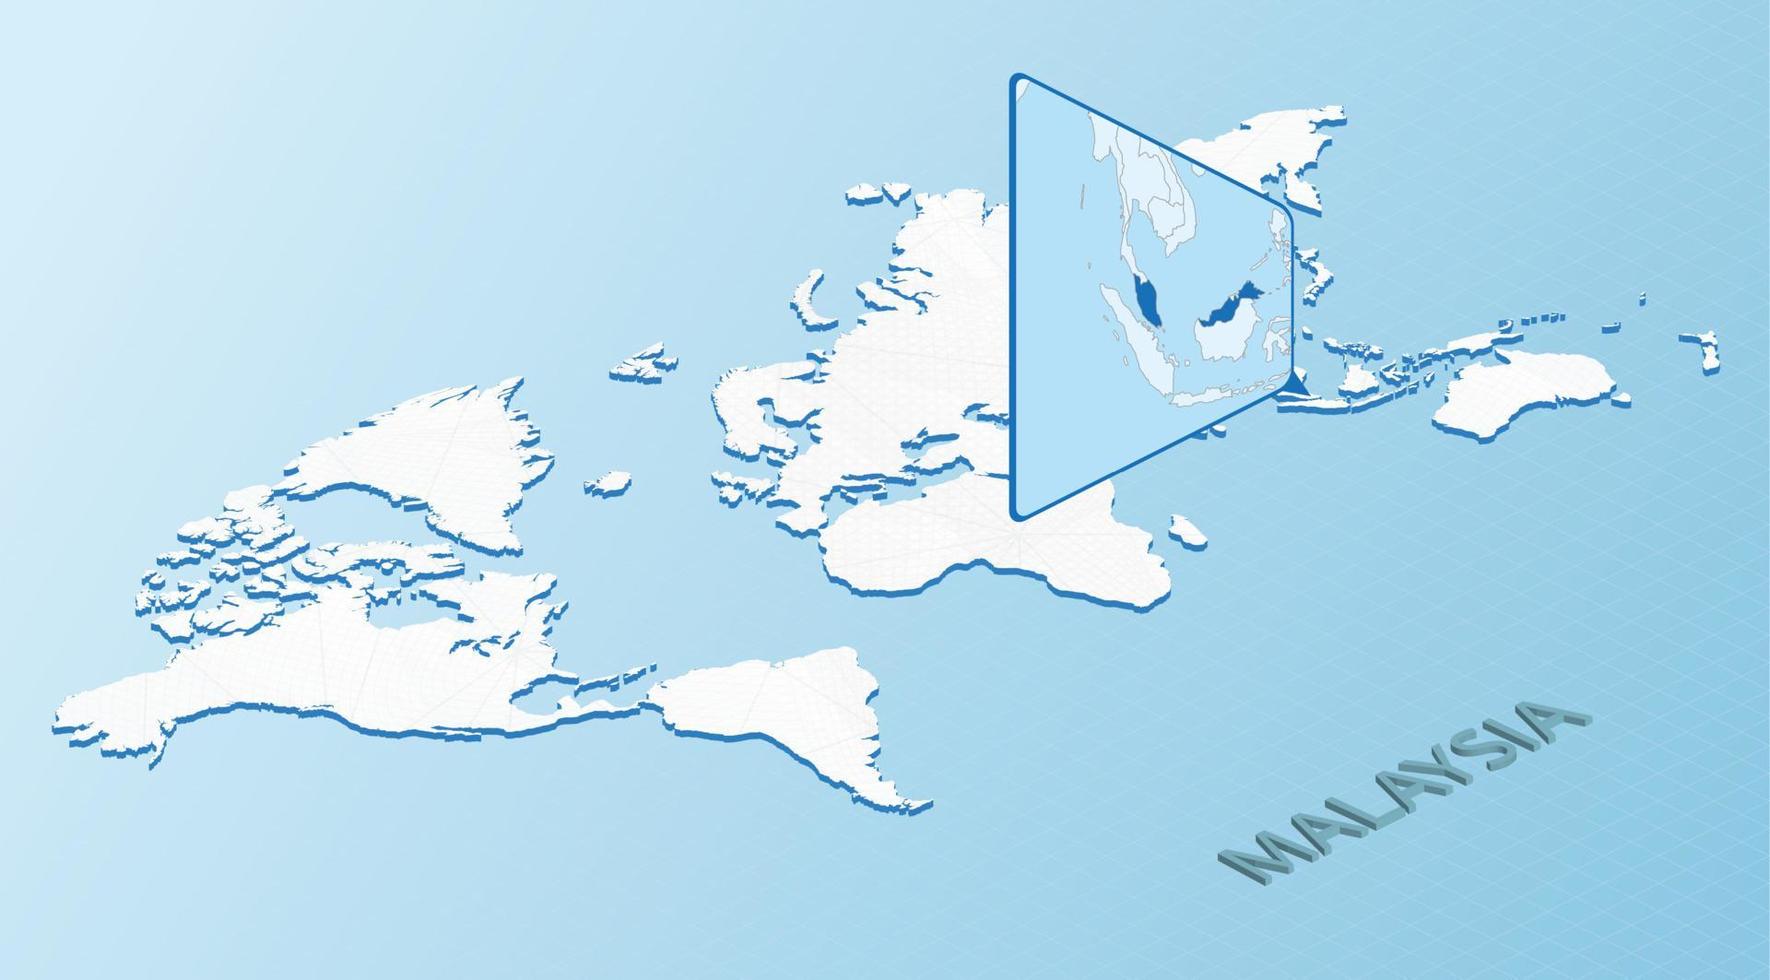 carte du monde en style isométrique avec carte détaillée de la malaisie. carte malaisie bleu clair avec carte du monde abstraite. vecteur